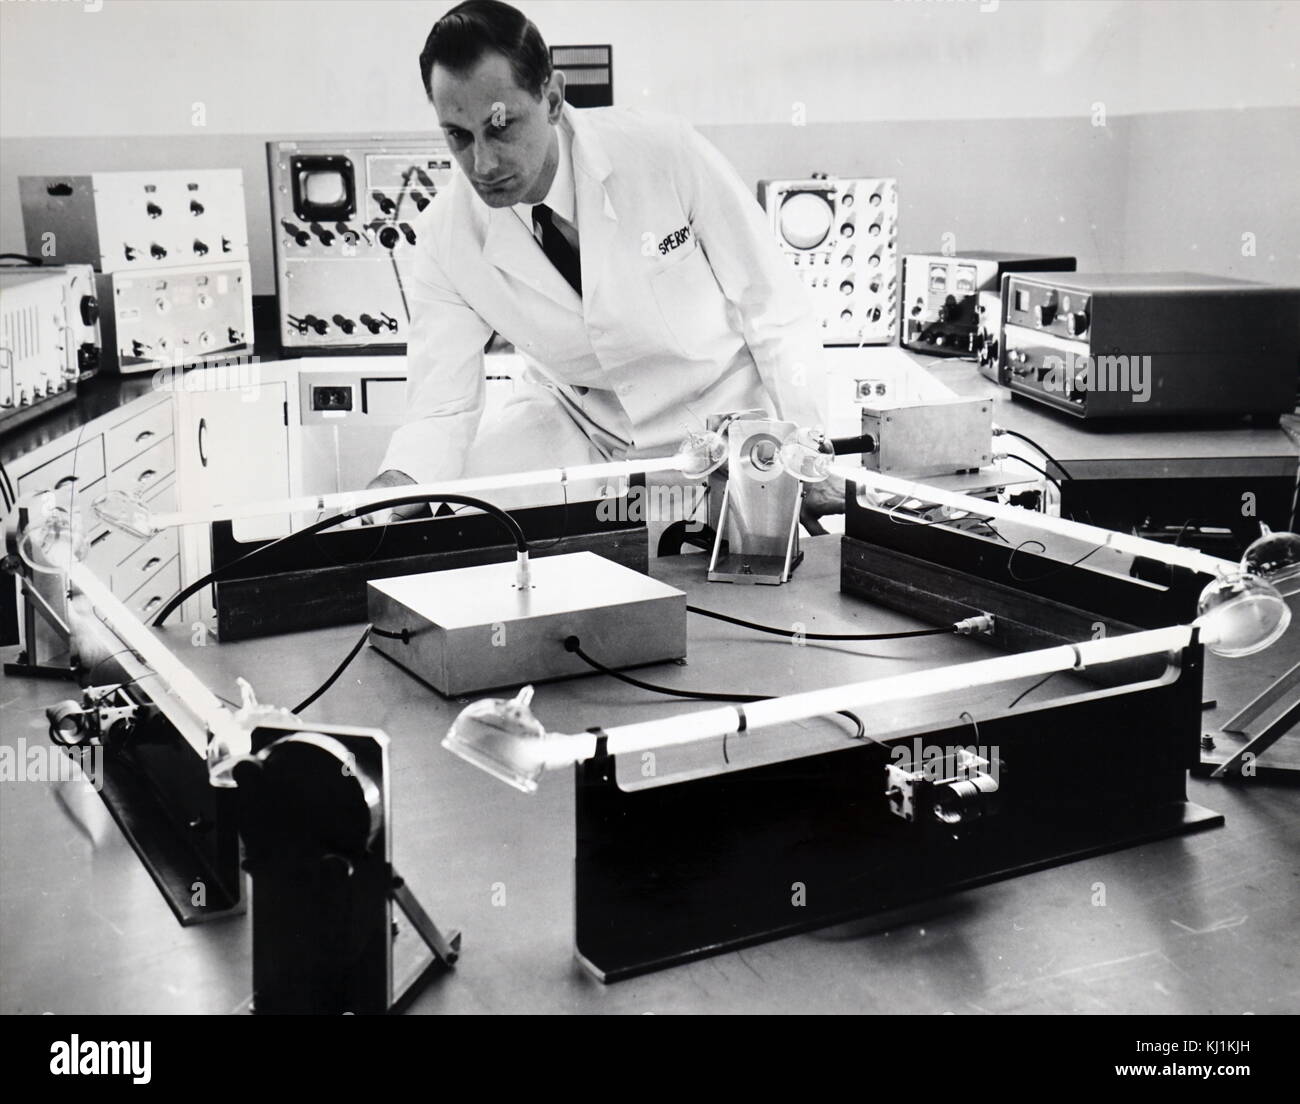 Foto von einem Wissenschaftler testen eines "closed-circuit "Laser, Superior, ein gyroskop Für die Führung der Raumfahrzeuge, Raketen, Flugzeuge und Schiffe. Laserlicht Balken blinken durch die vier Leuchtstoffröhren in entgegengesetzte Richtungen werden verwendet, um kleine Bewegungen des Labor Tabelle zu messen. Vom 20. Jahrhundert Stockfoto